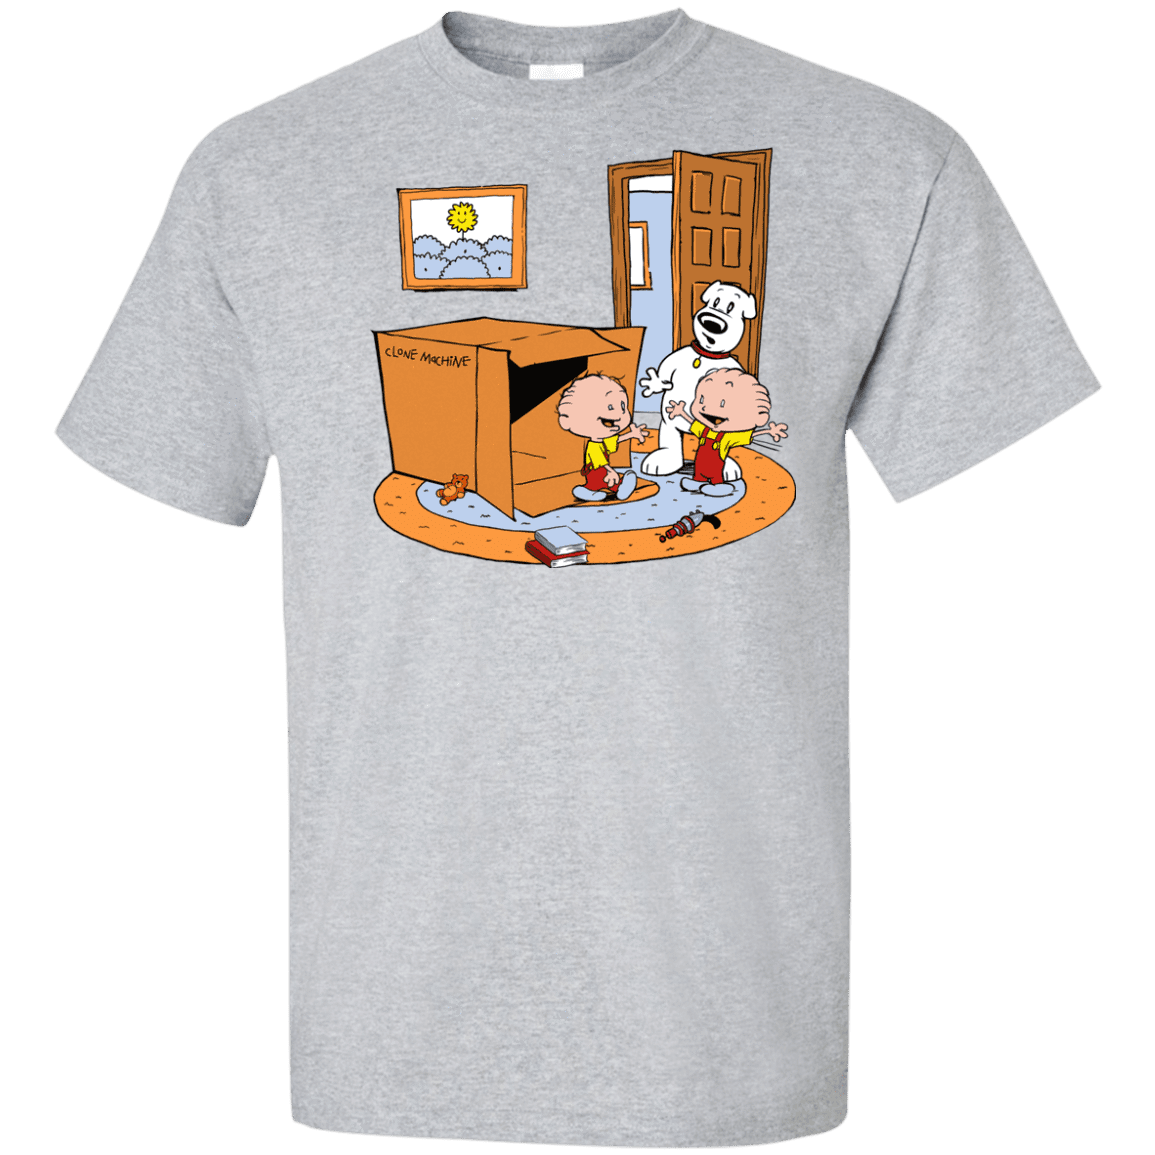 T-Shirts Sport Grey / XLT Stewie and Brian Tall T-Shirt